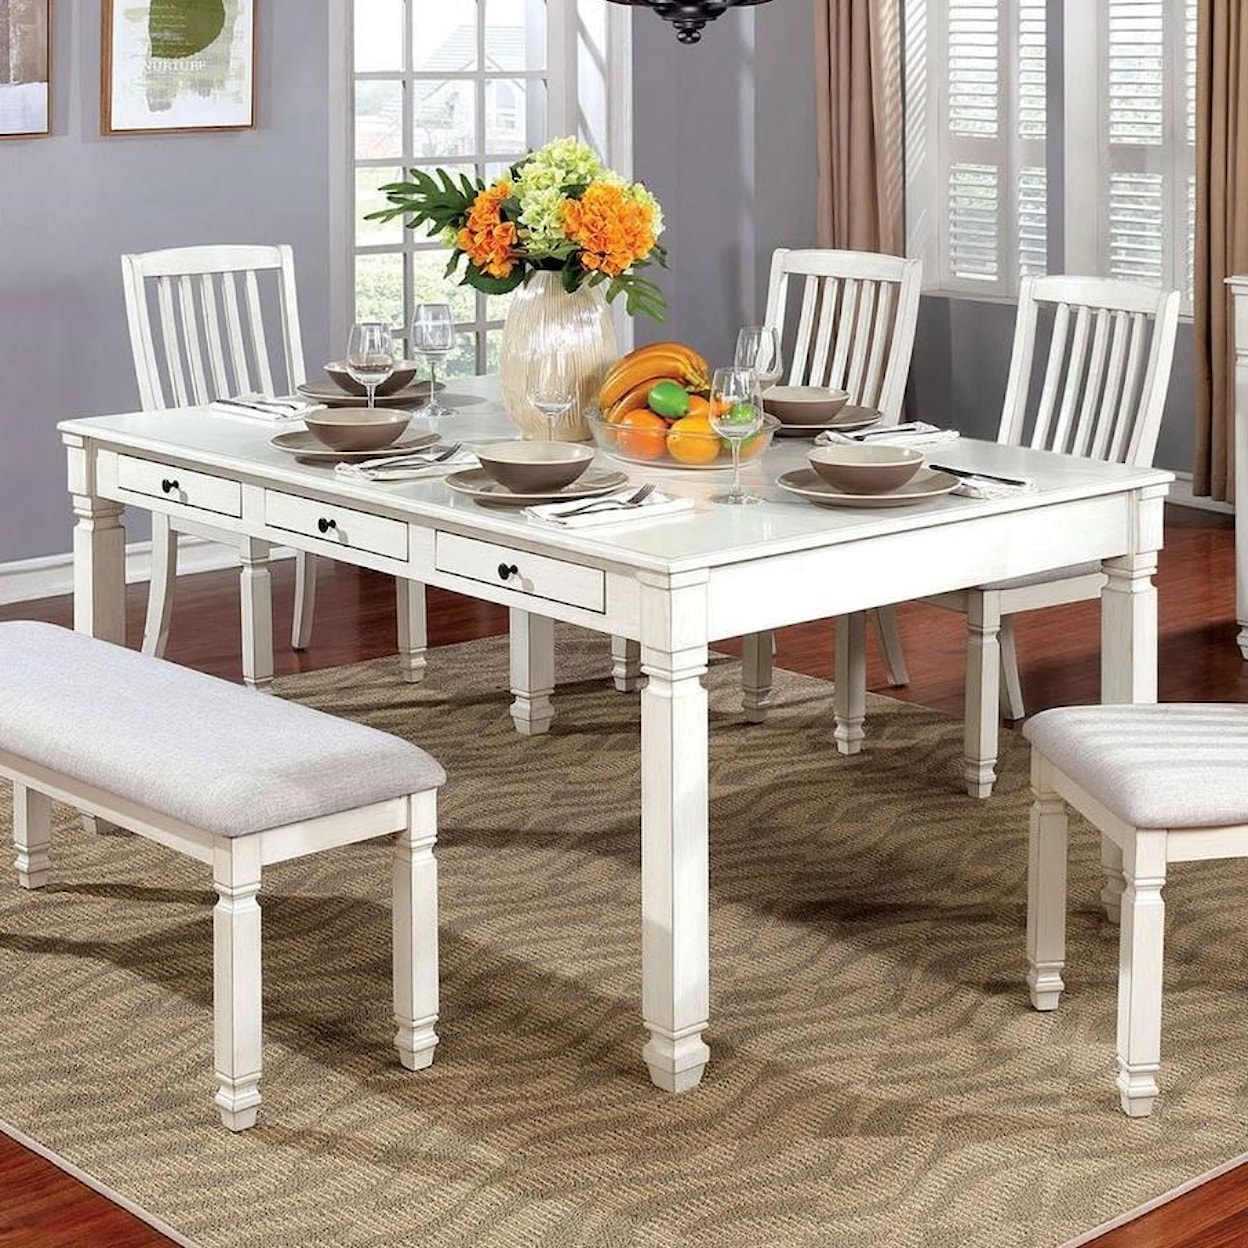 Furniture of America Kaliyah Dining Table